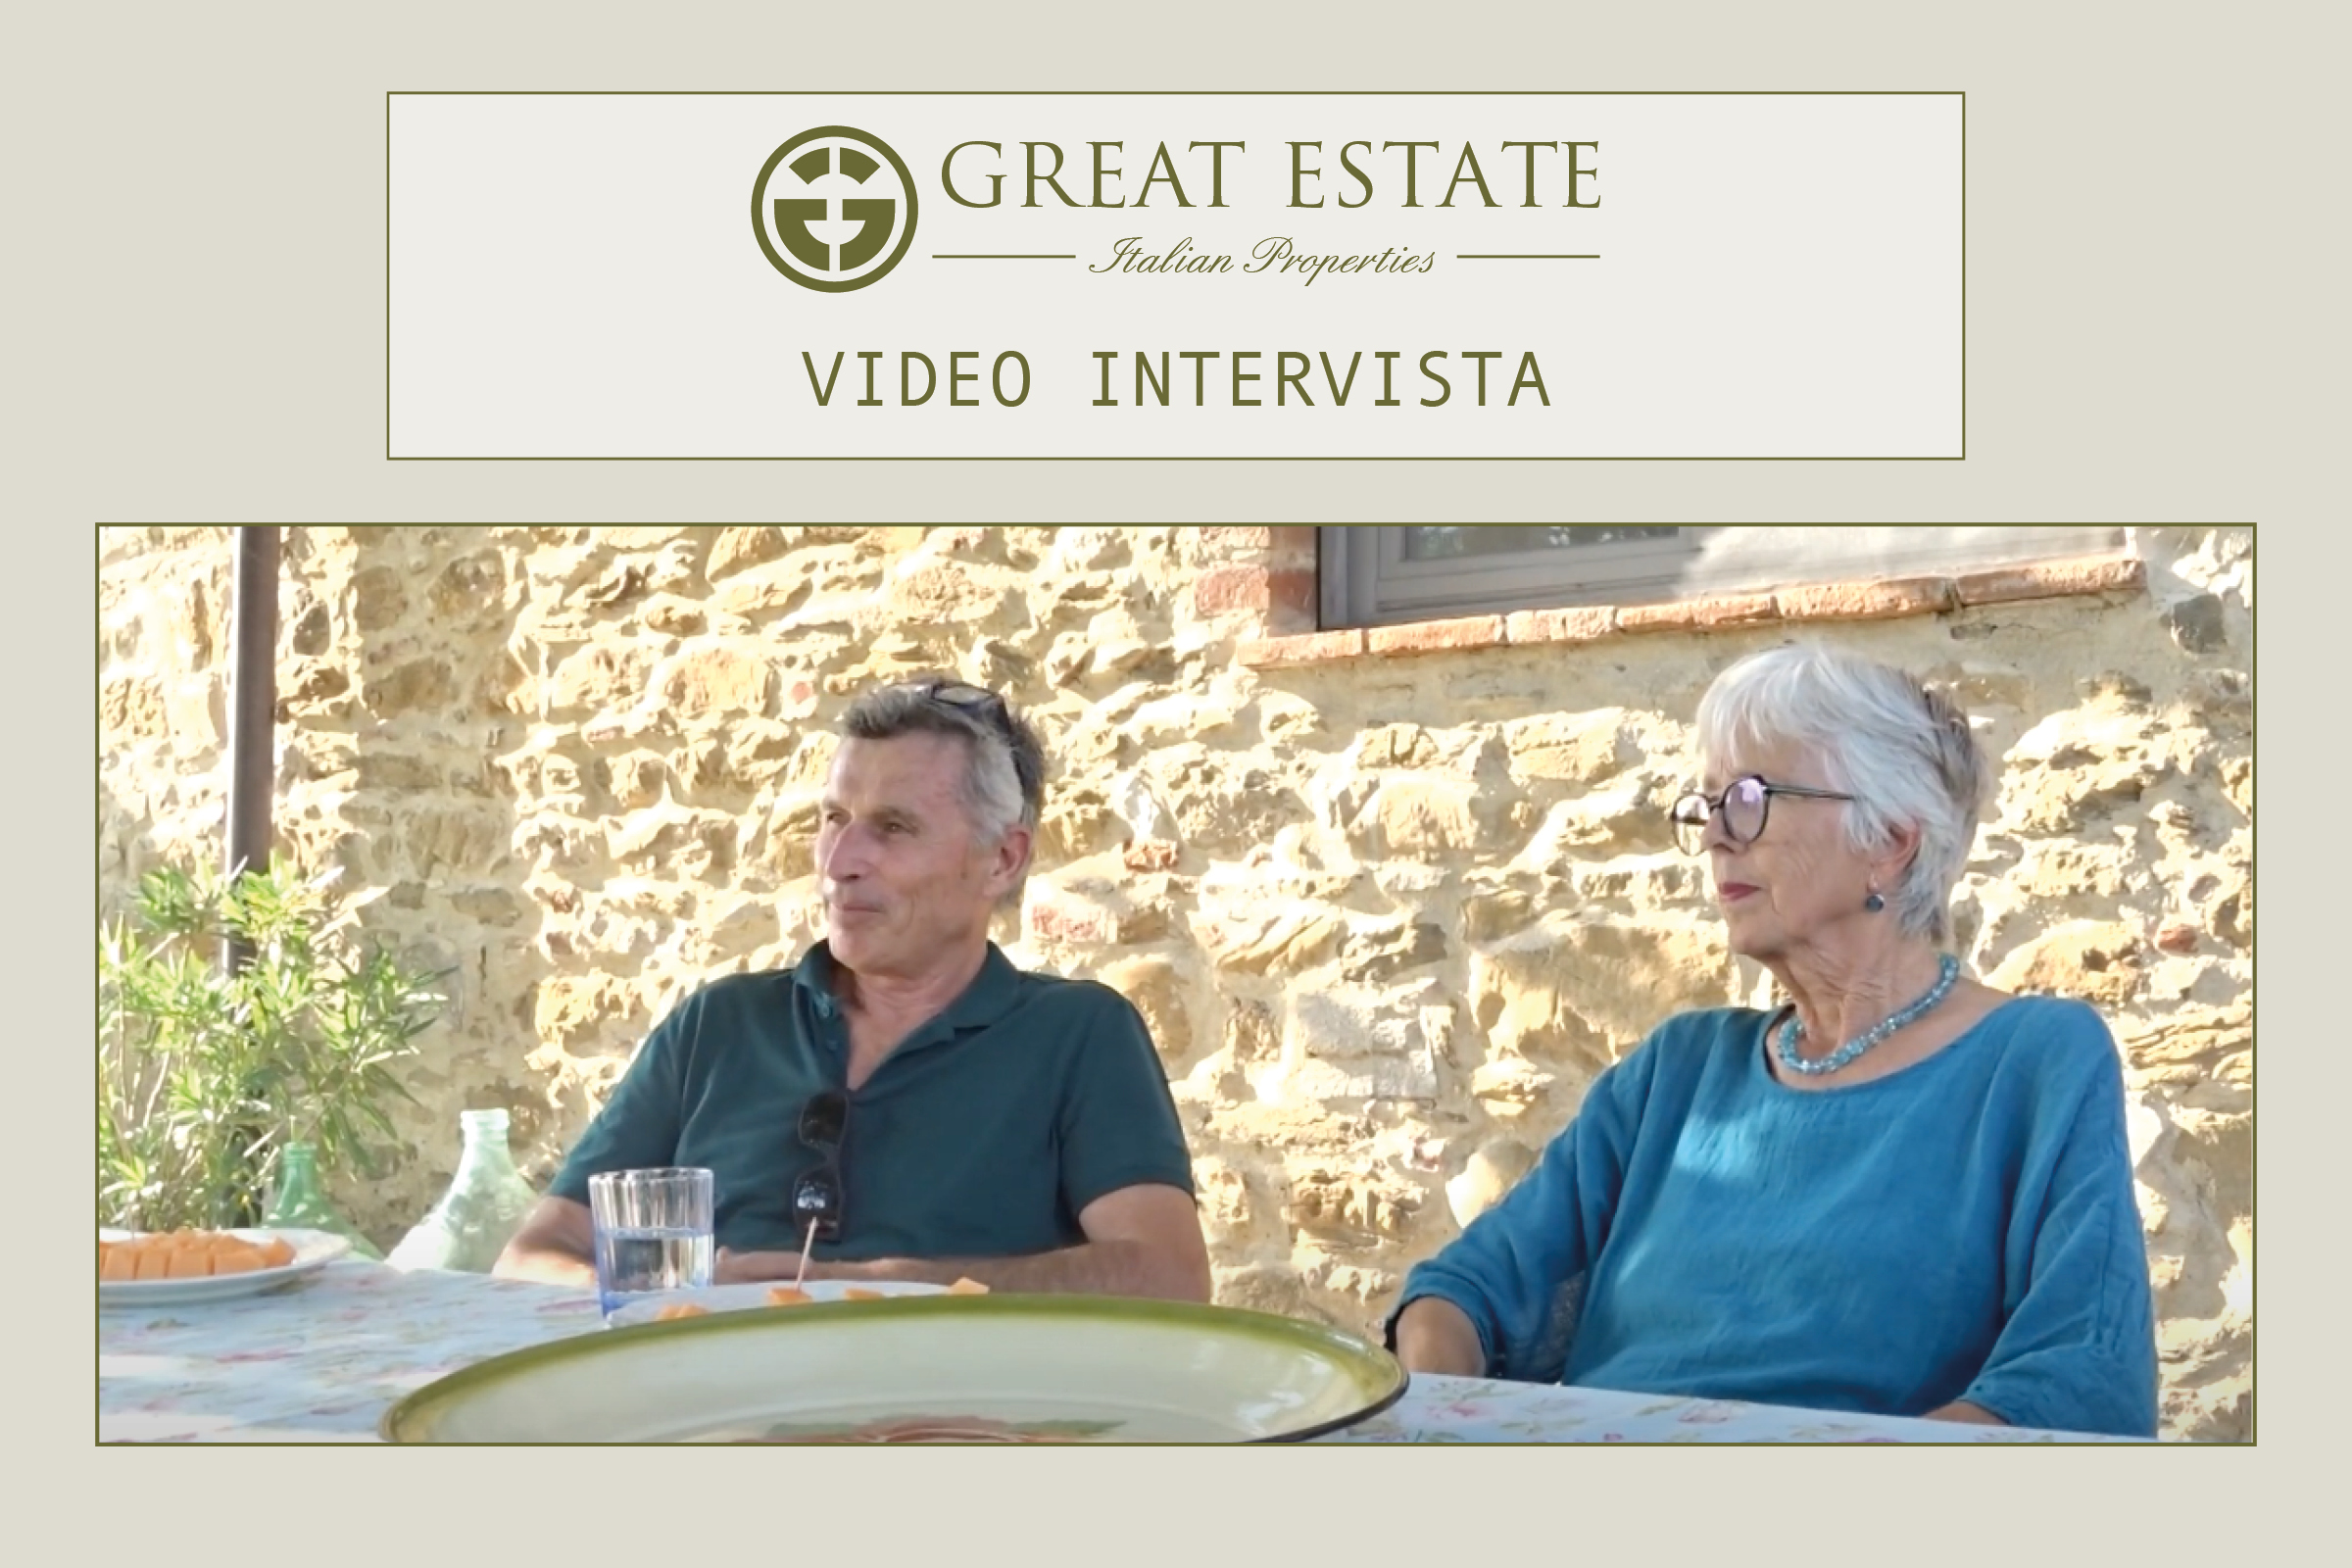 Giampaolo, Sylvia e la vendita de “L’Antica Pietra: la video intervista di G.E.